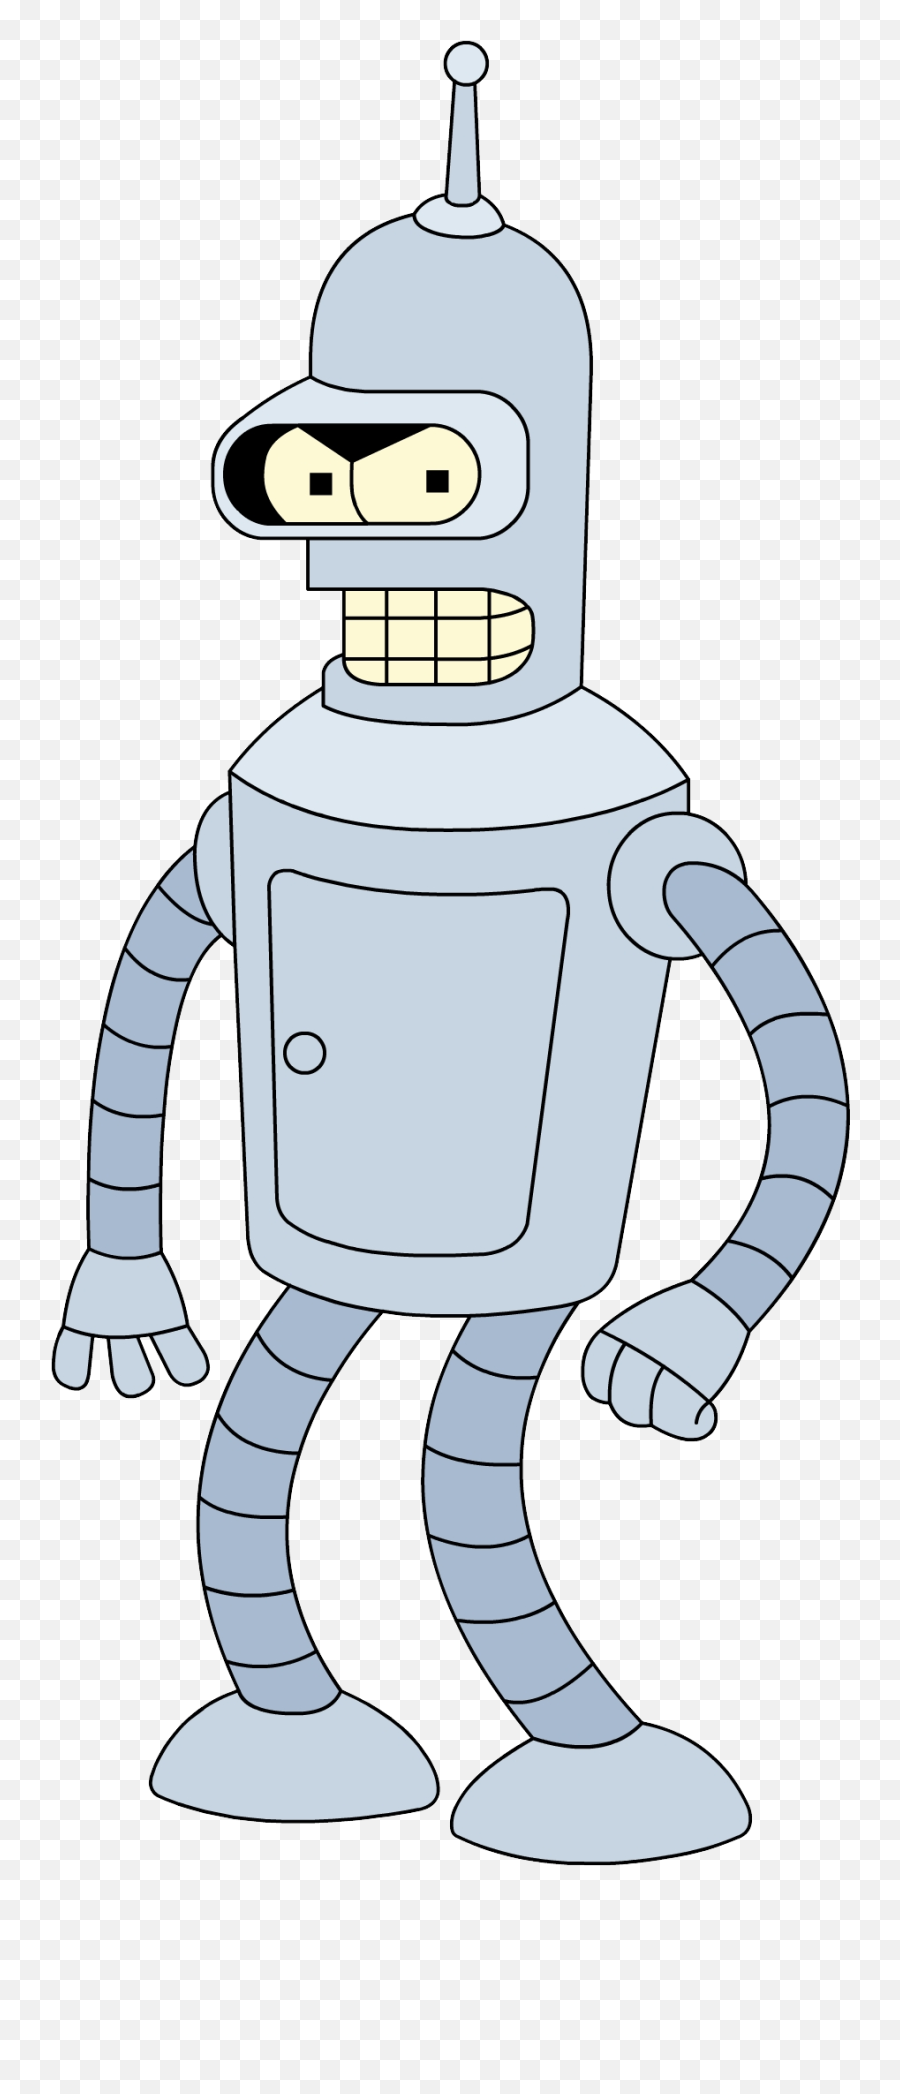 Futurama Bender Png Image - Transparent Futurama Bender,Bender Png